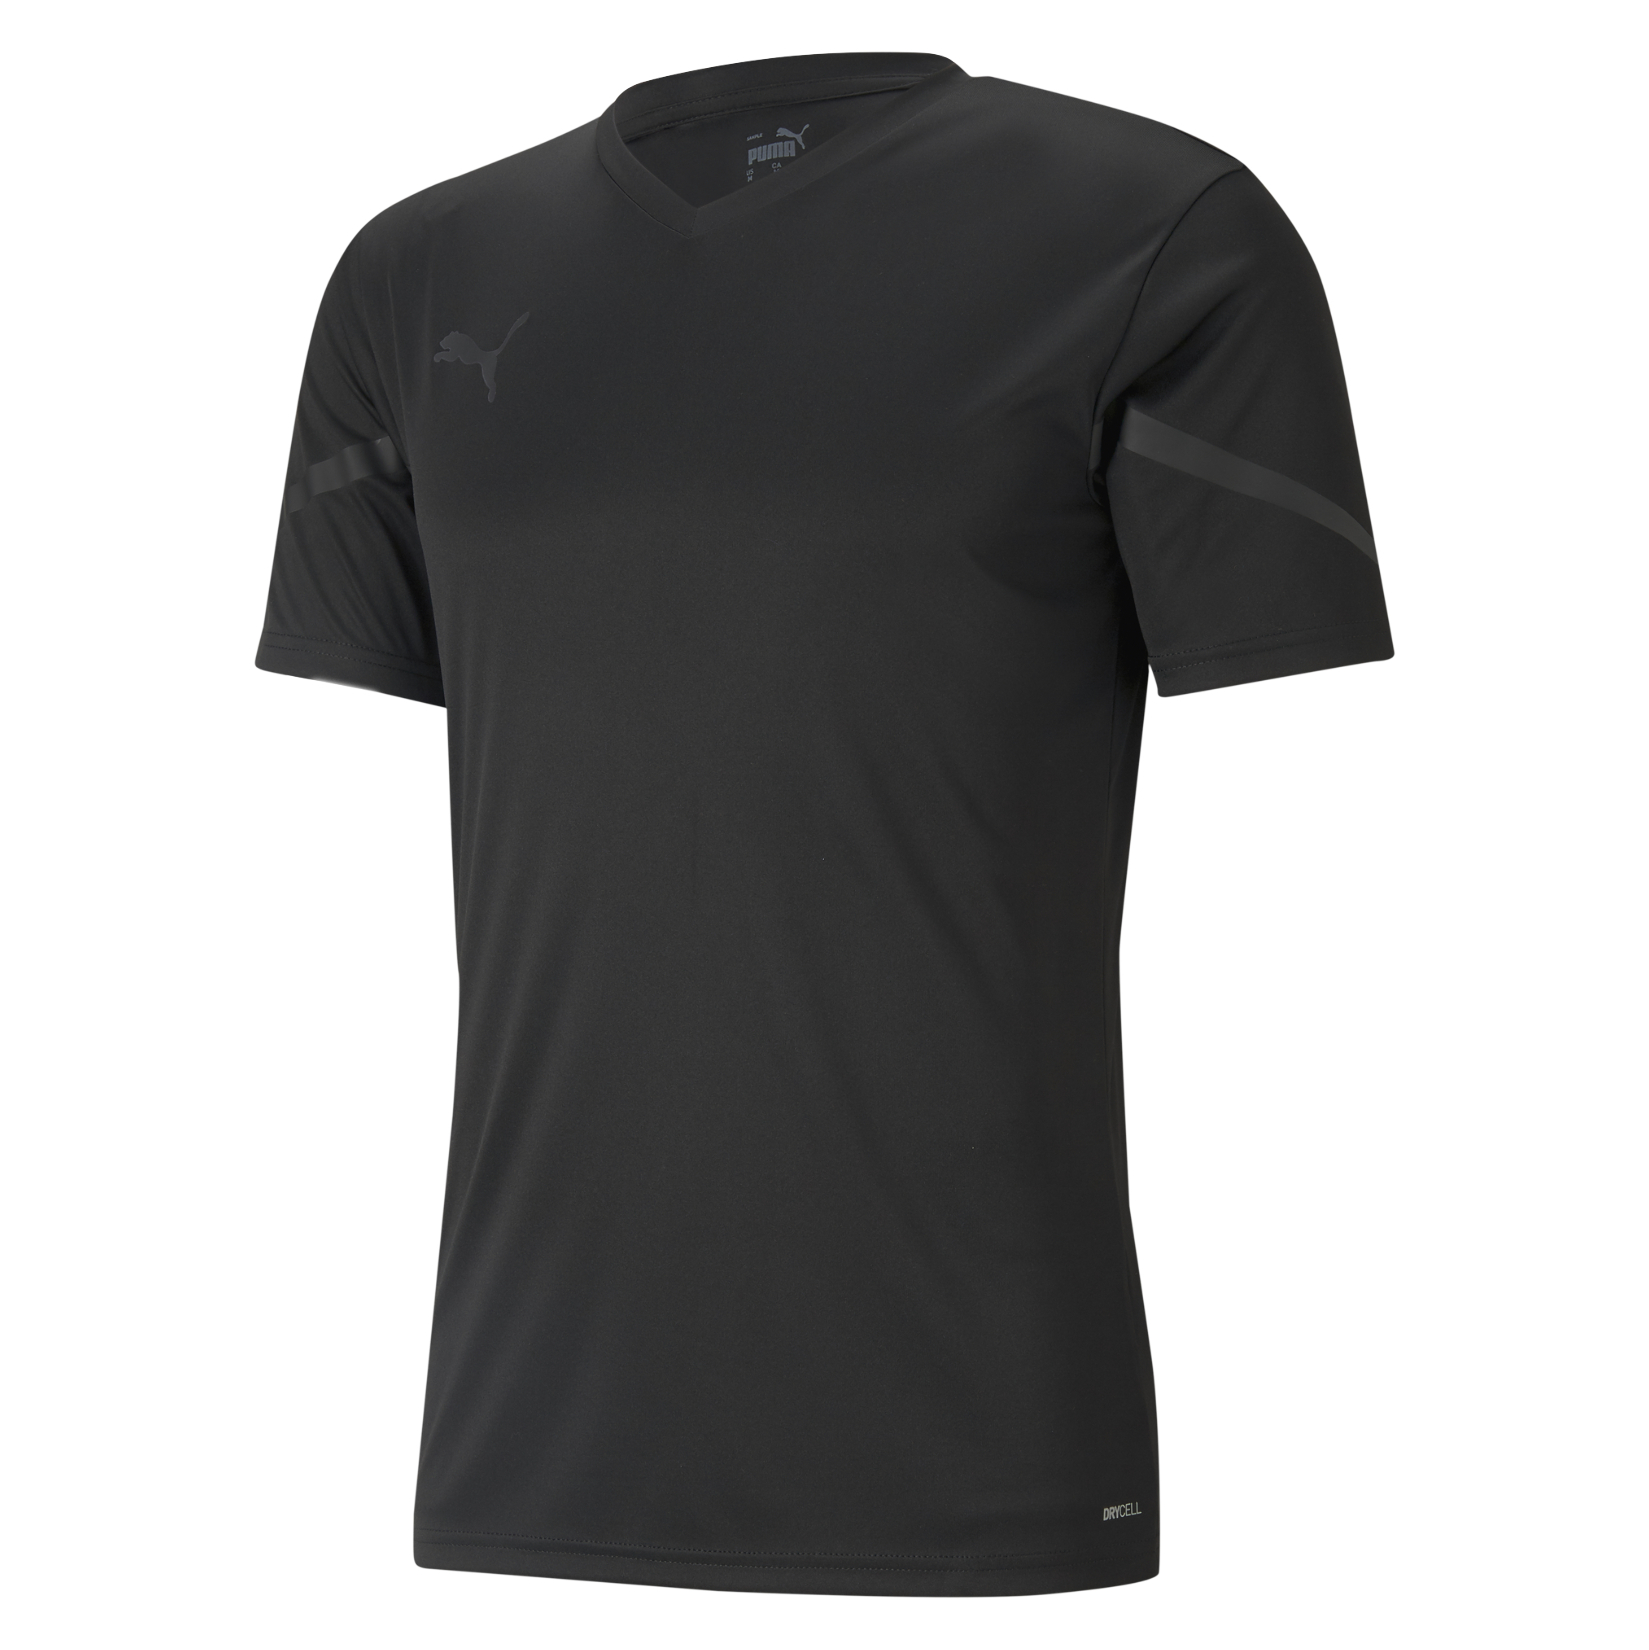 Puma Team Flash Short Sleeve Shirt - Kitlocker.com